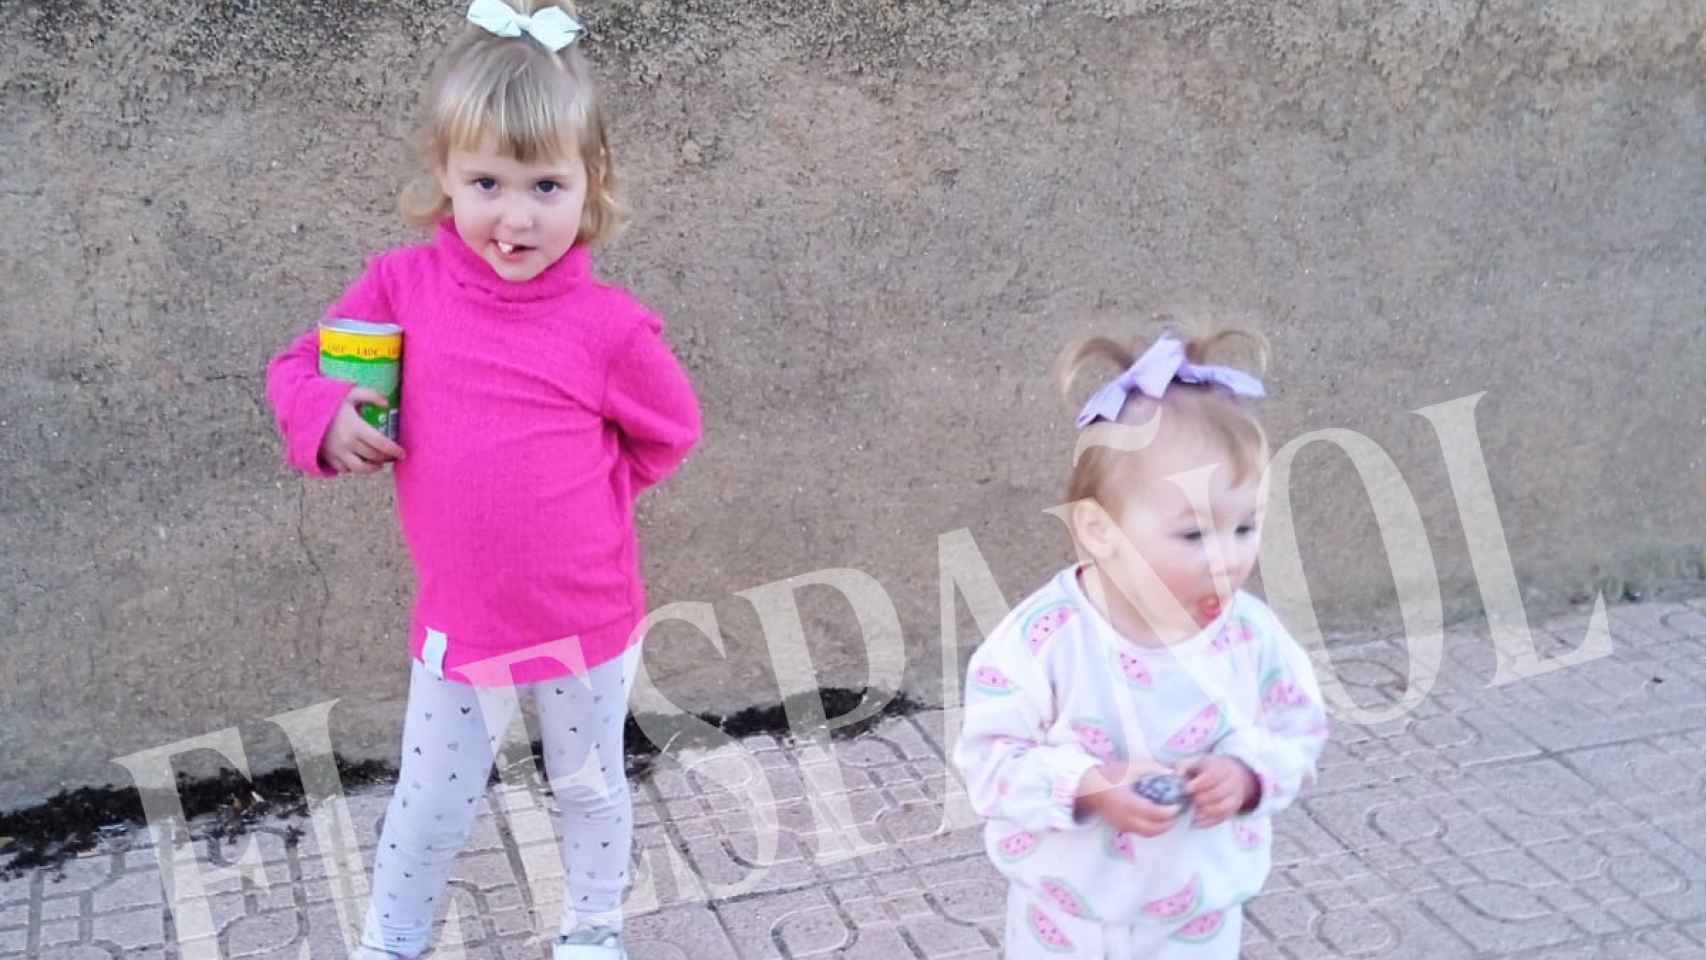 Larisa, de 4 años, junto a su hermana, Elisa, de 2 años, en una calle de Abla, en una imagen cedida por su madre, Alina Florentina Secui.